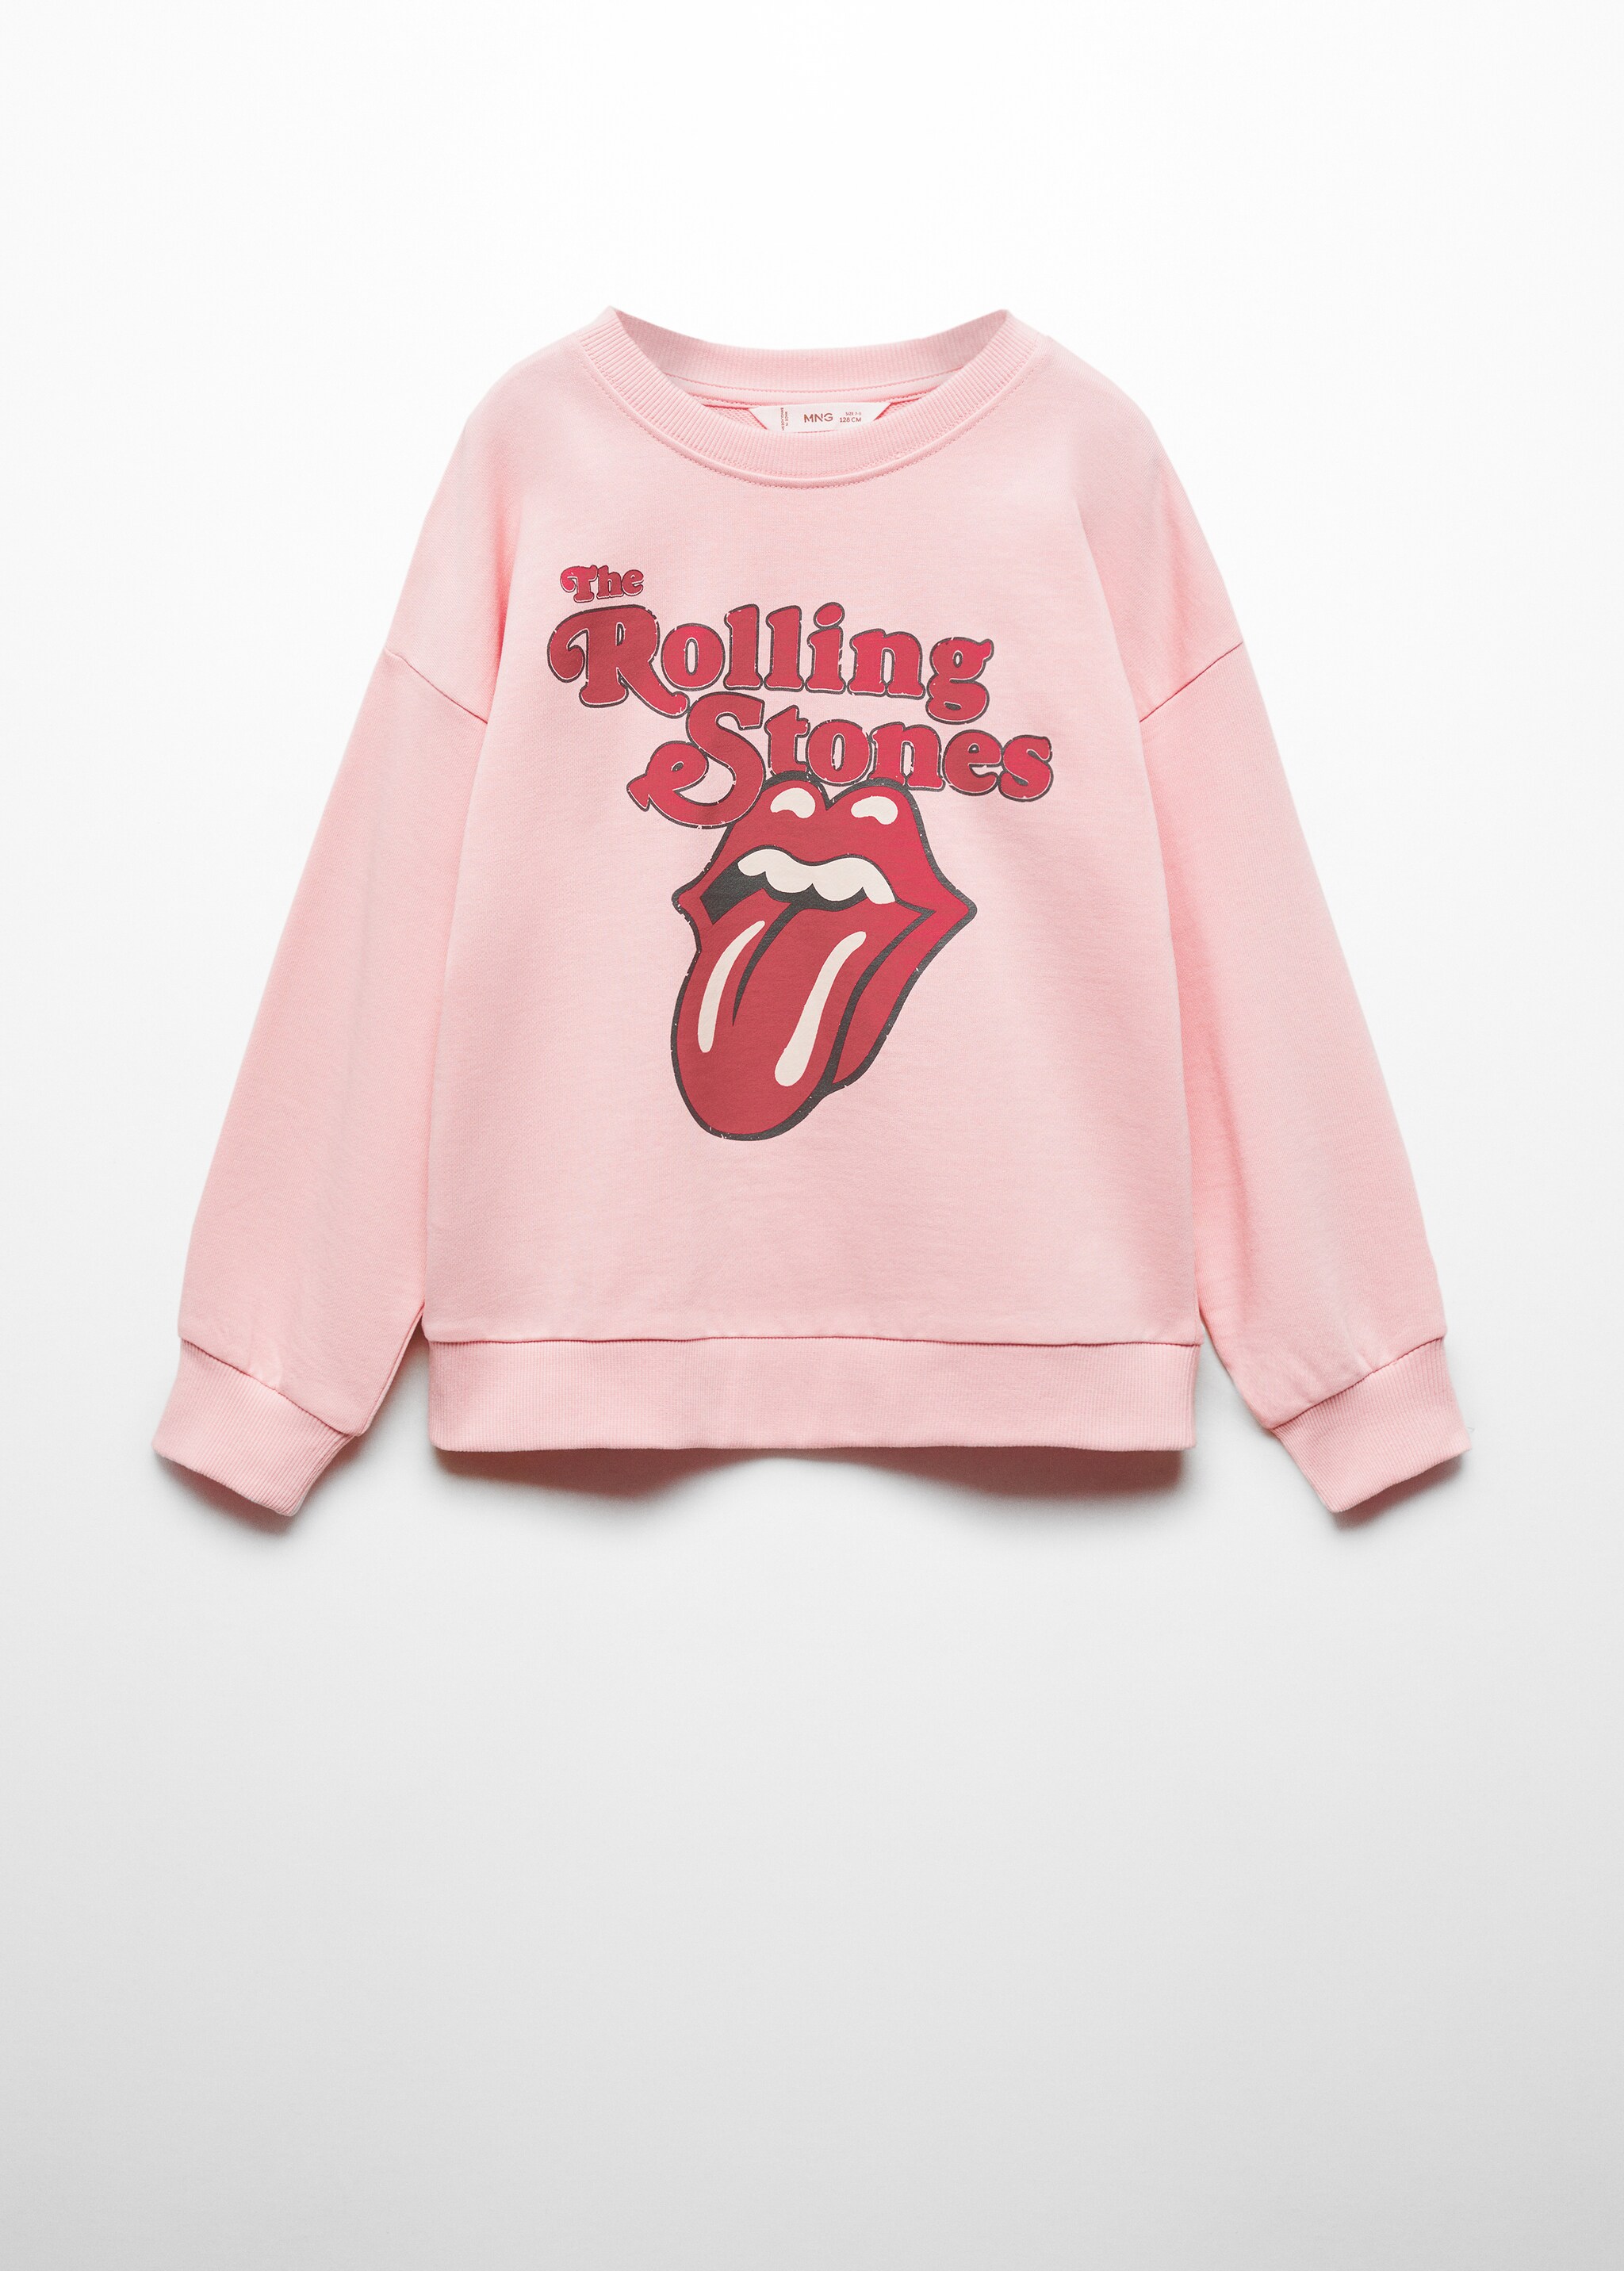 Sweatshirt dos The Rolling Stones - Artigo sem modelo